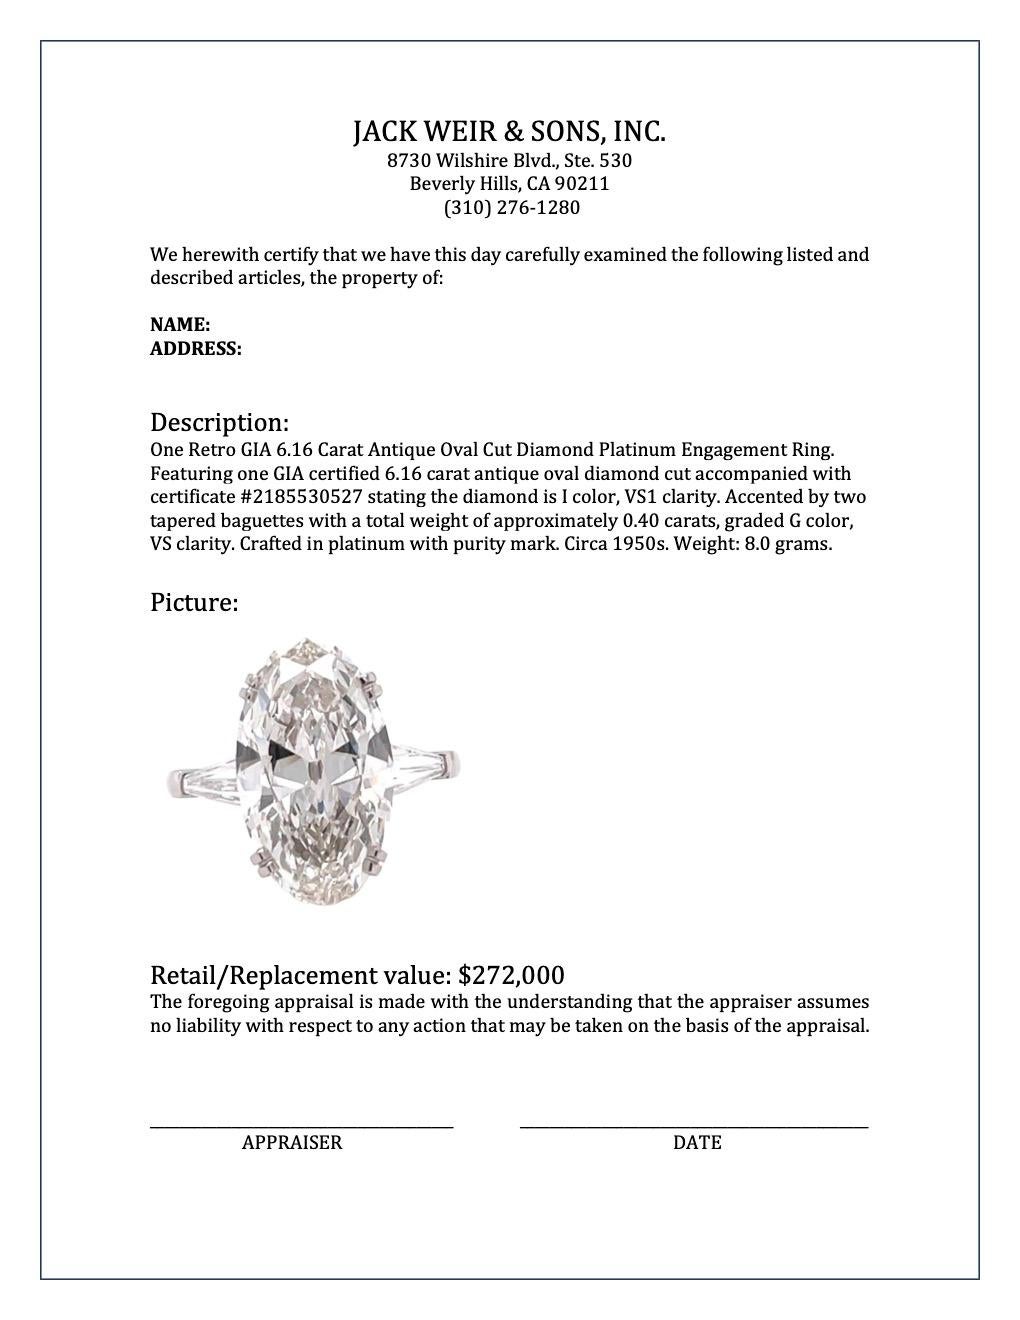 Retro GIA 6.16 Carat Antique Oval Cut Diamond Platinum Engagement Ring 2